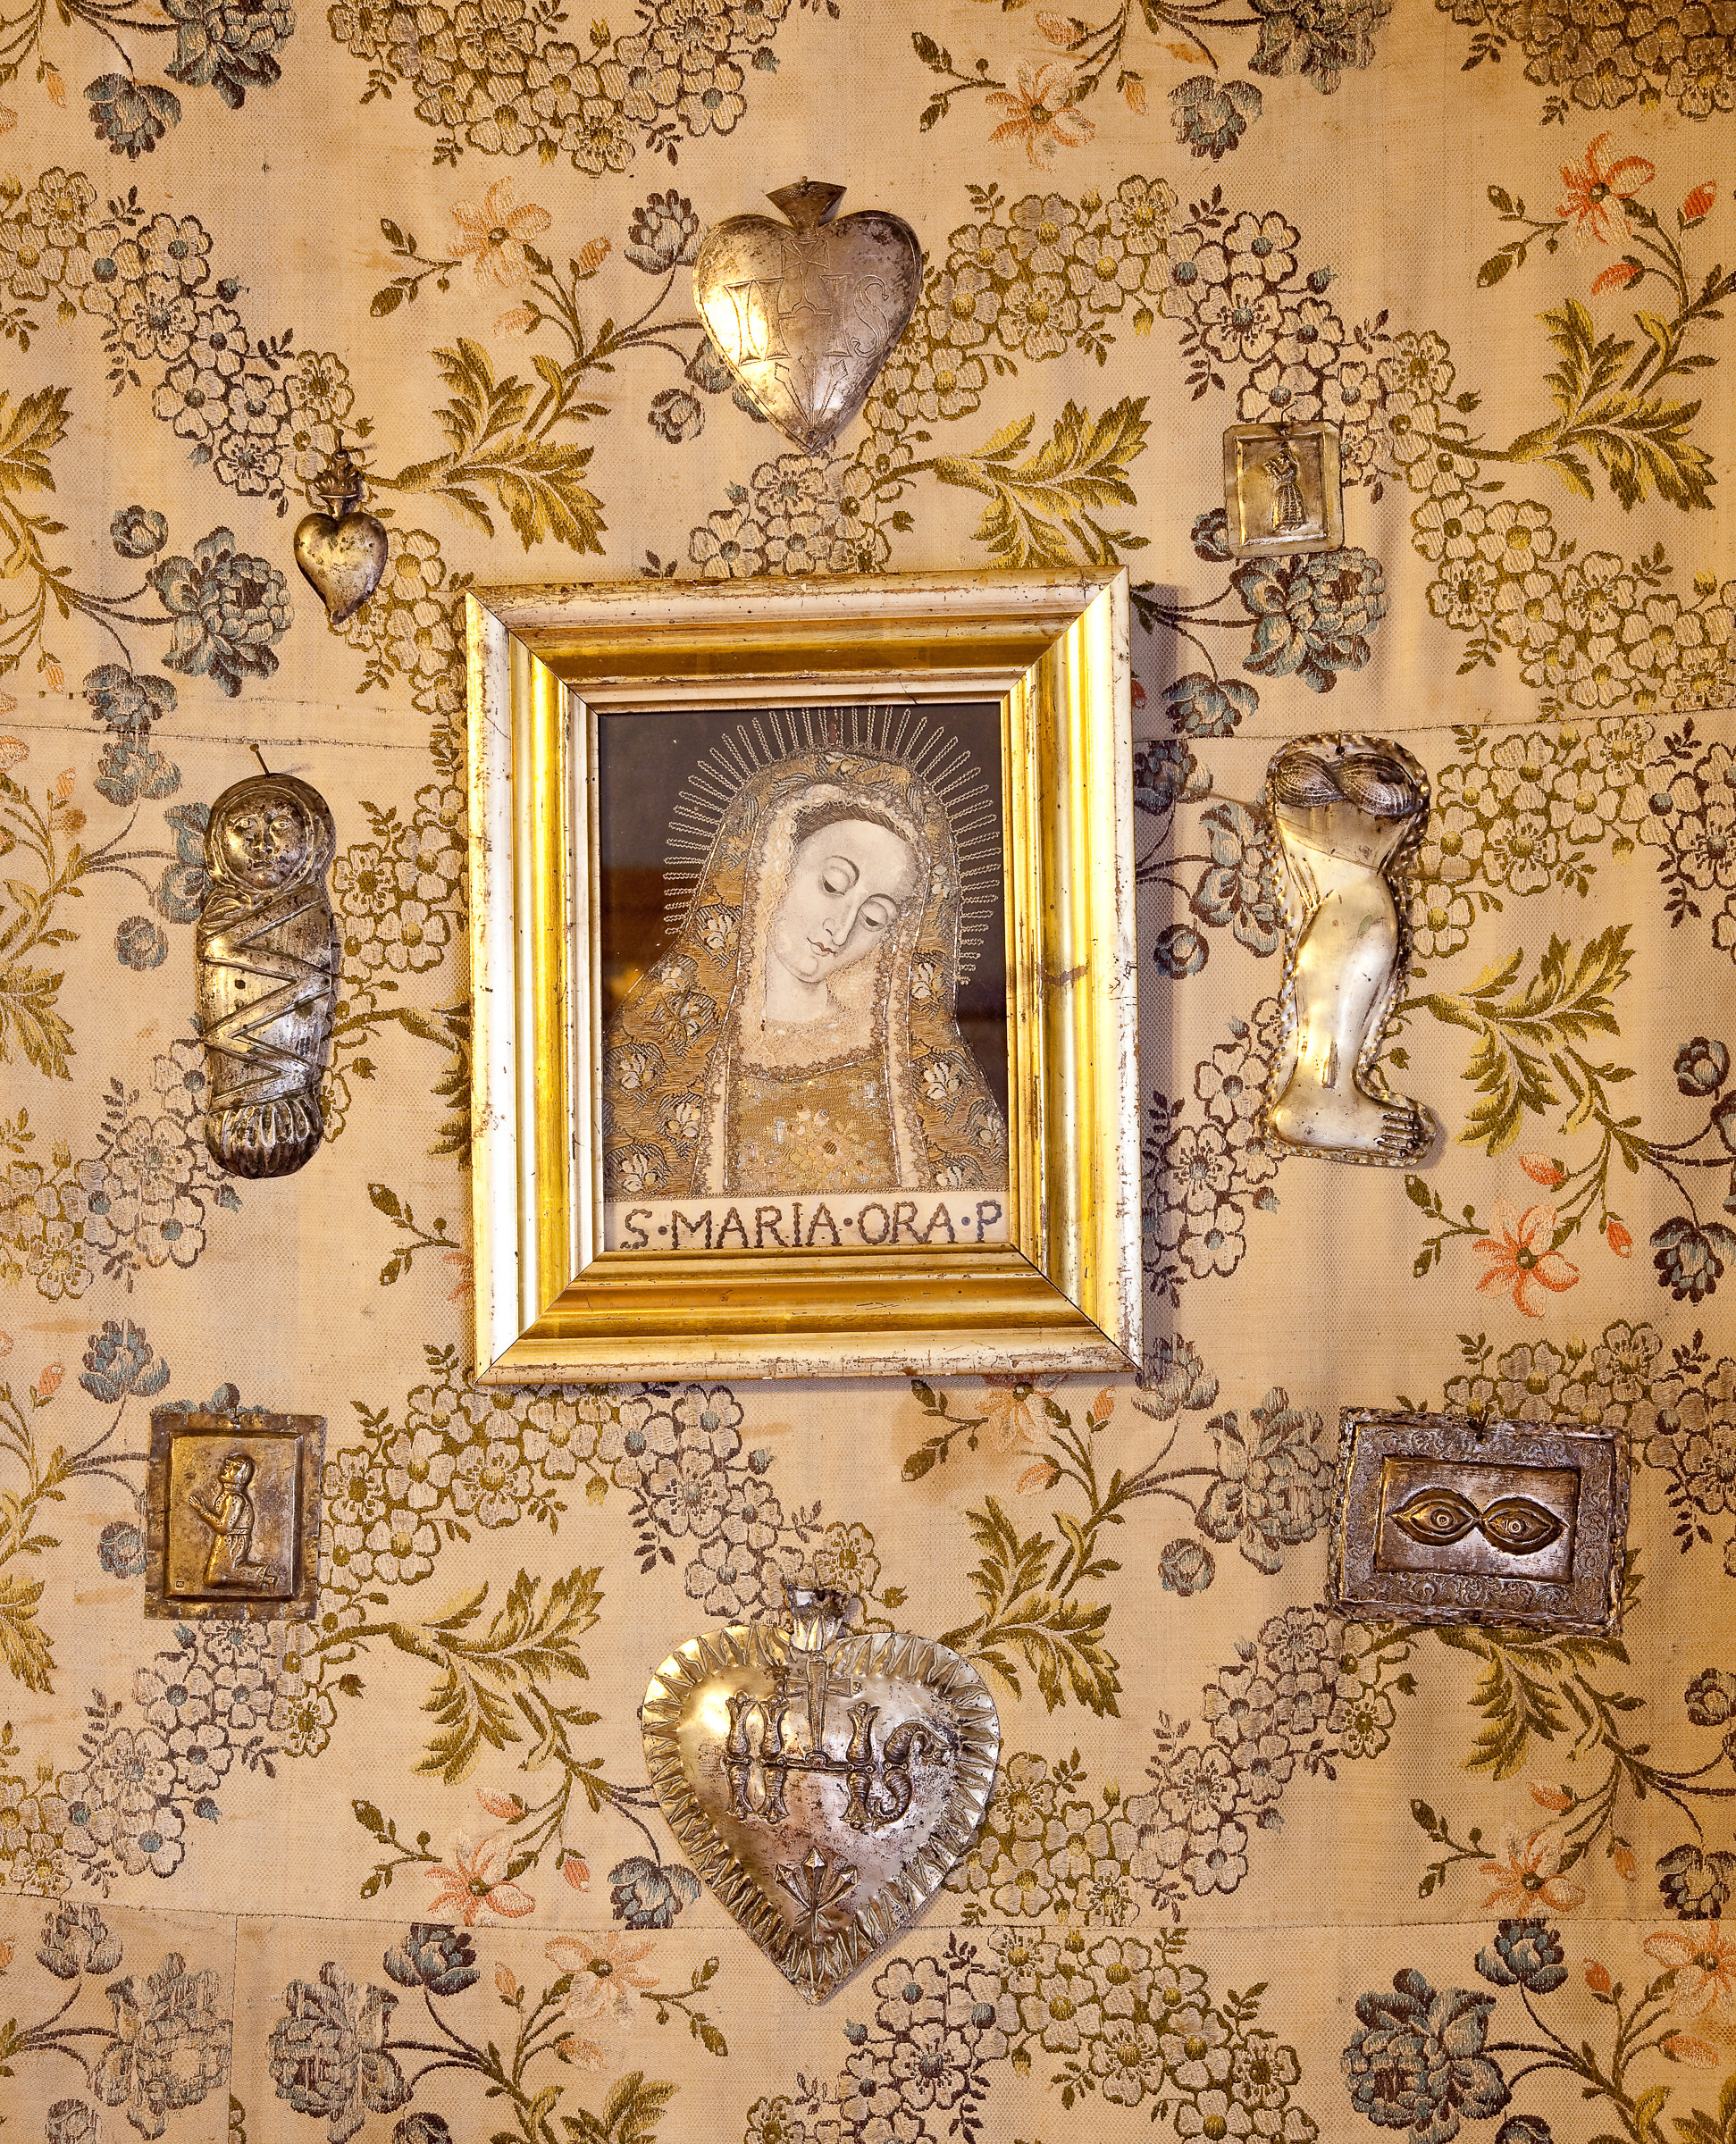 Detal. Obrazek Matki Boskiej w złotej ramce. Obok srebrne ozdoby z symbolami religijnymi